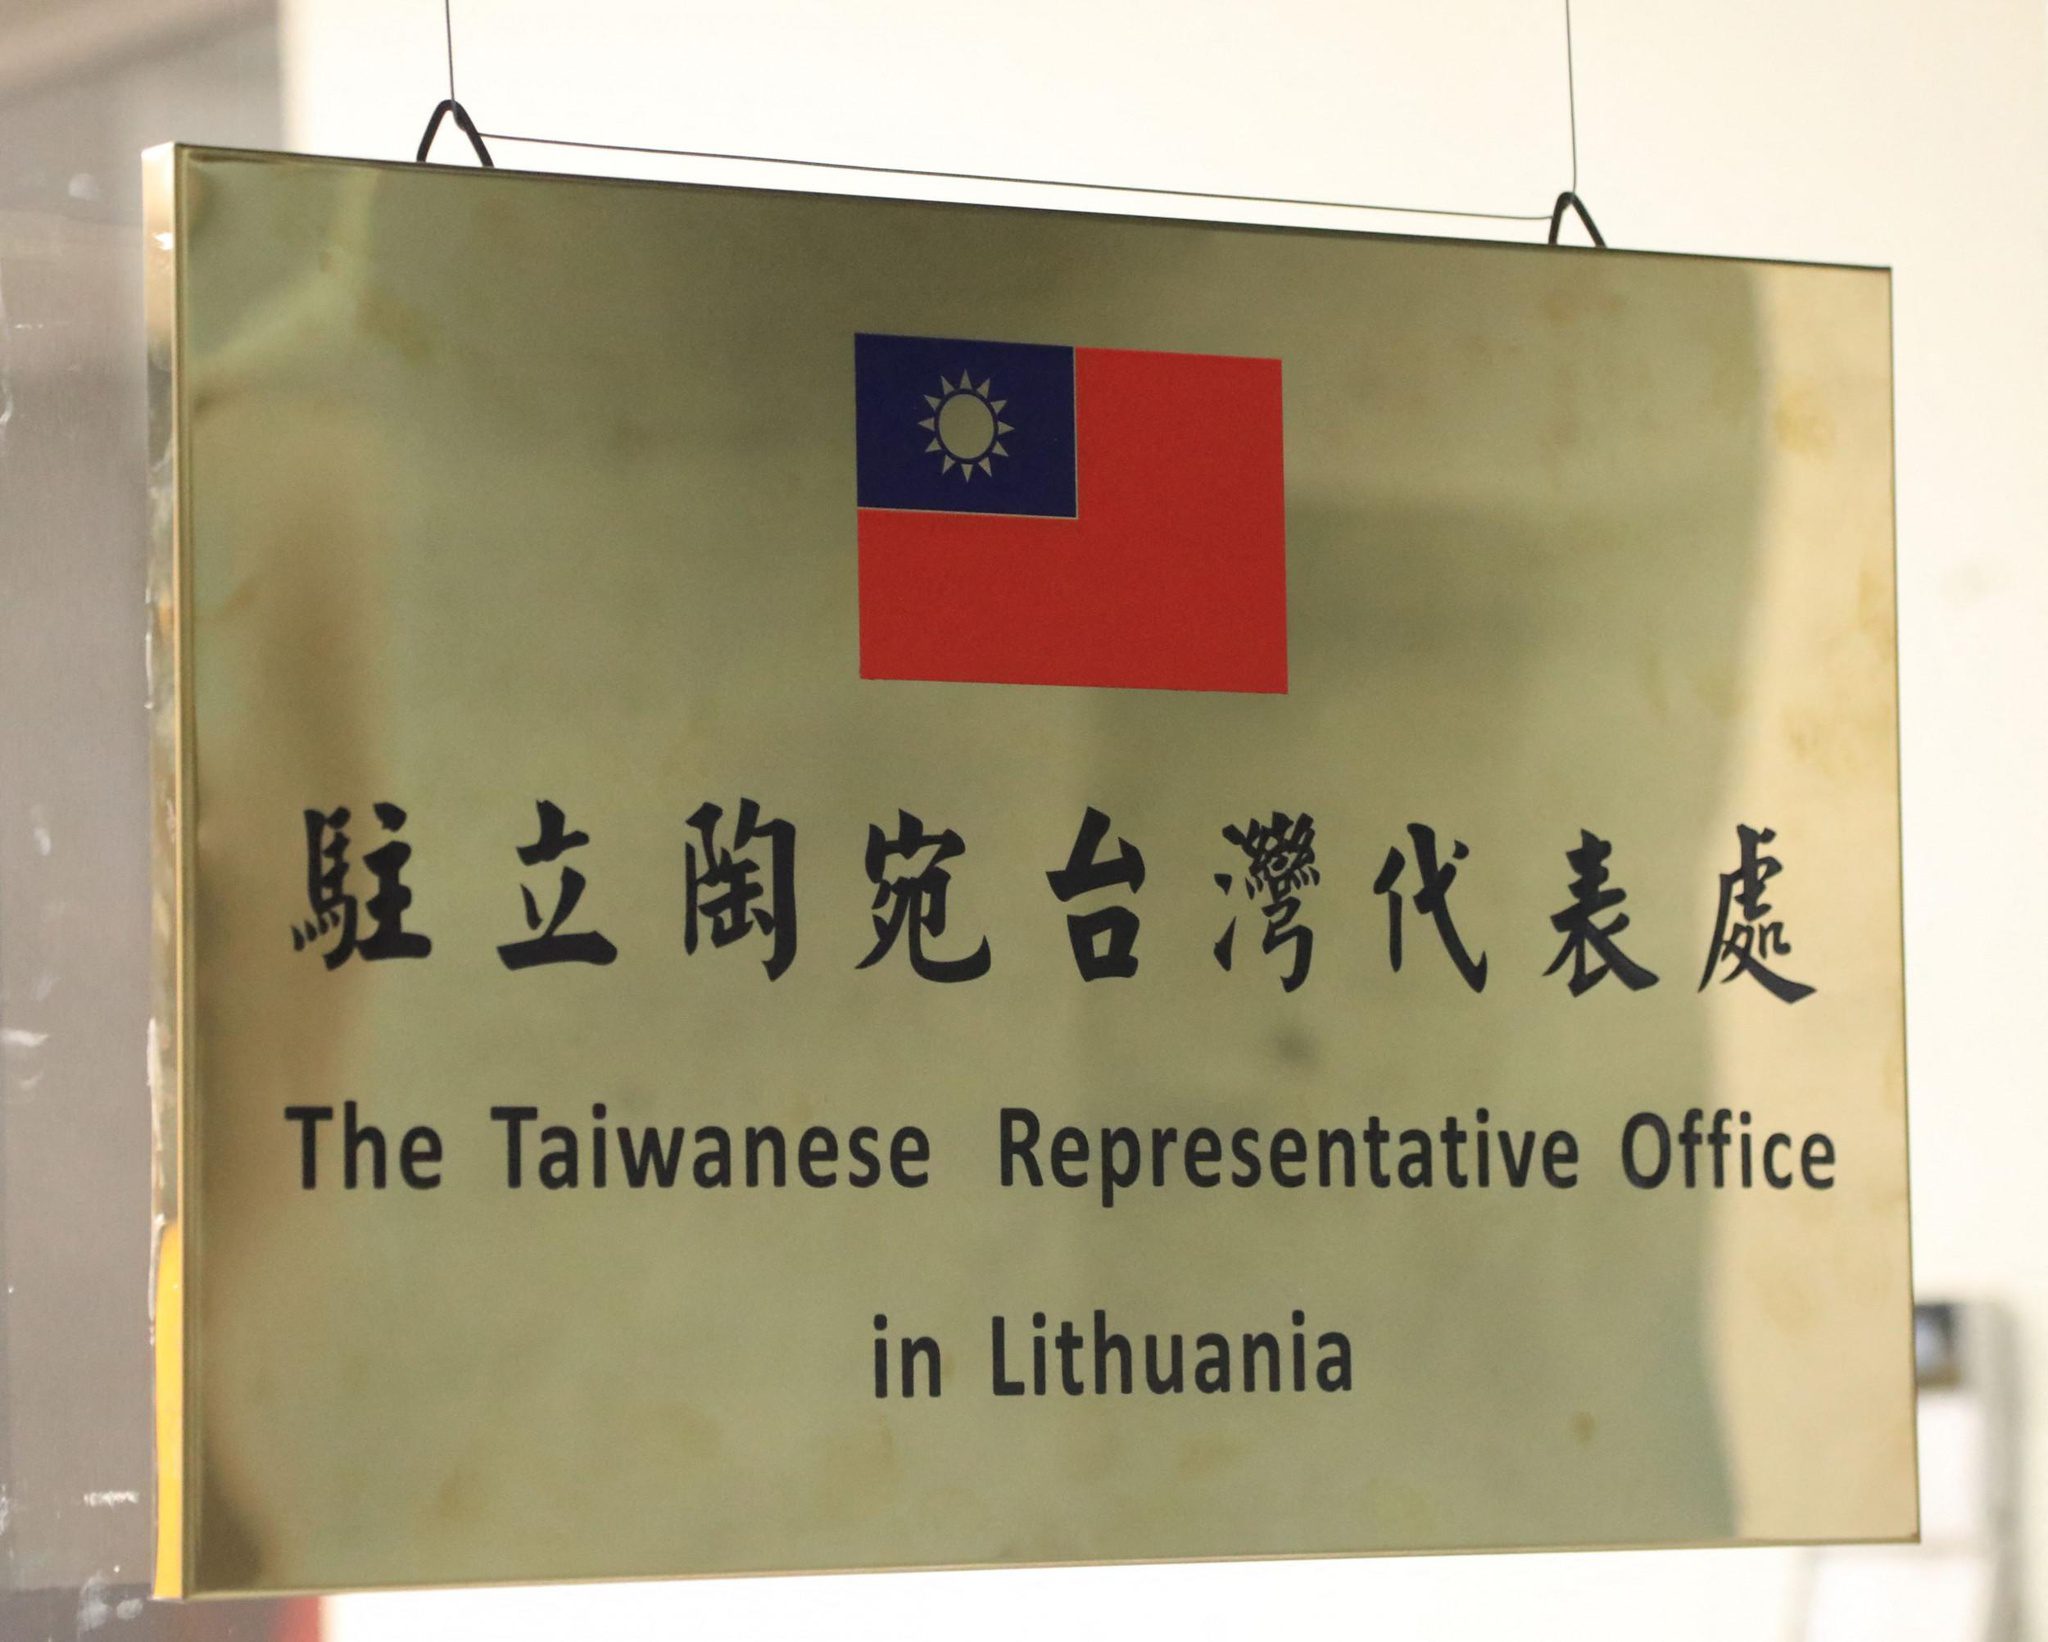 Lithuania, Đài Loan đối phó sức ép từ Trung Quốc - ảnh 1